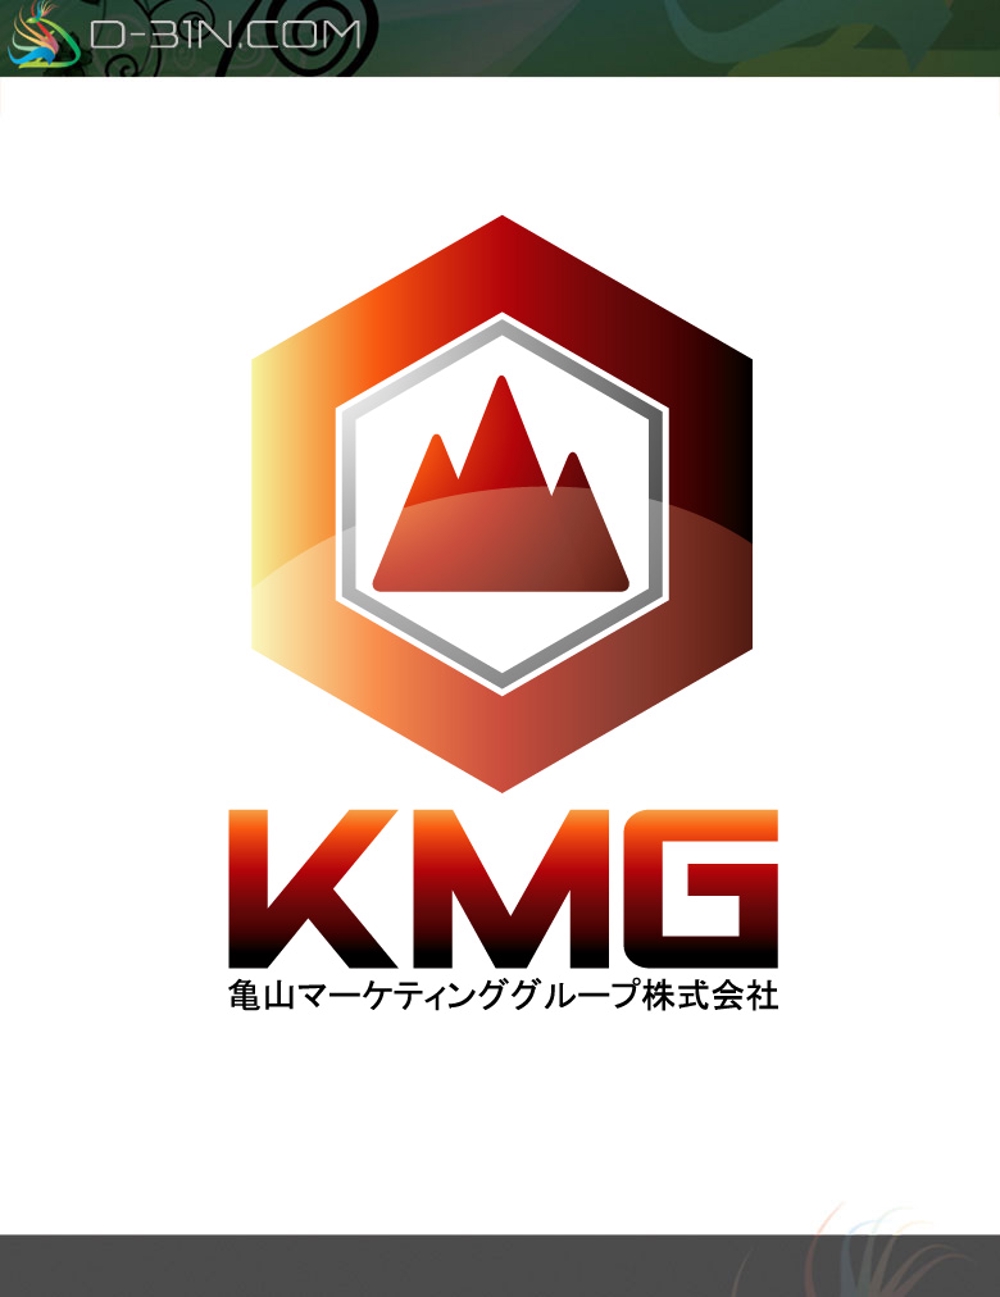 kmg-logo01.jpg